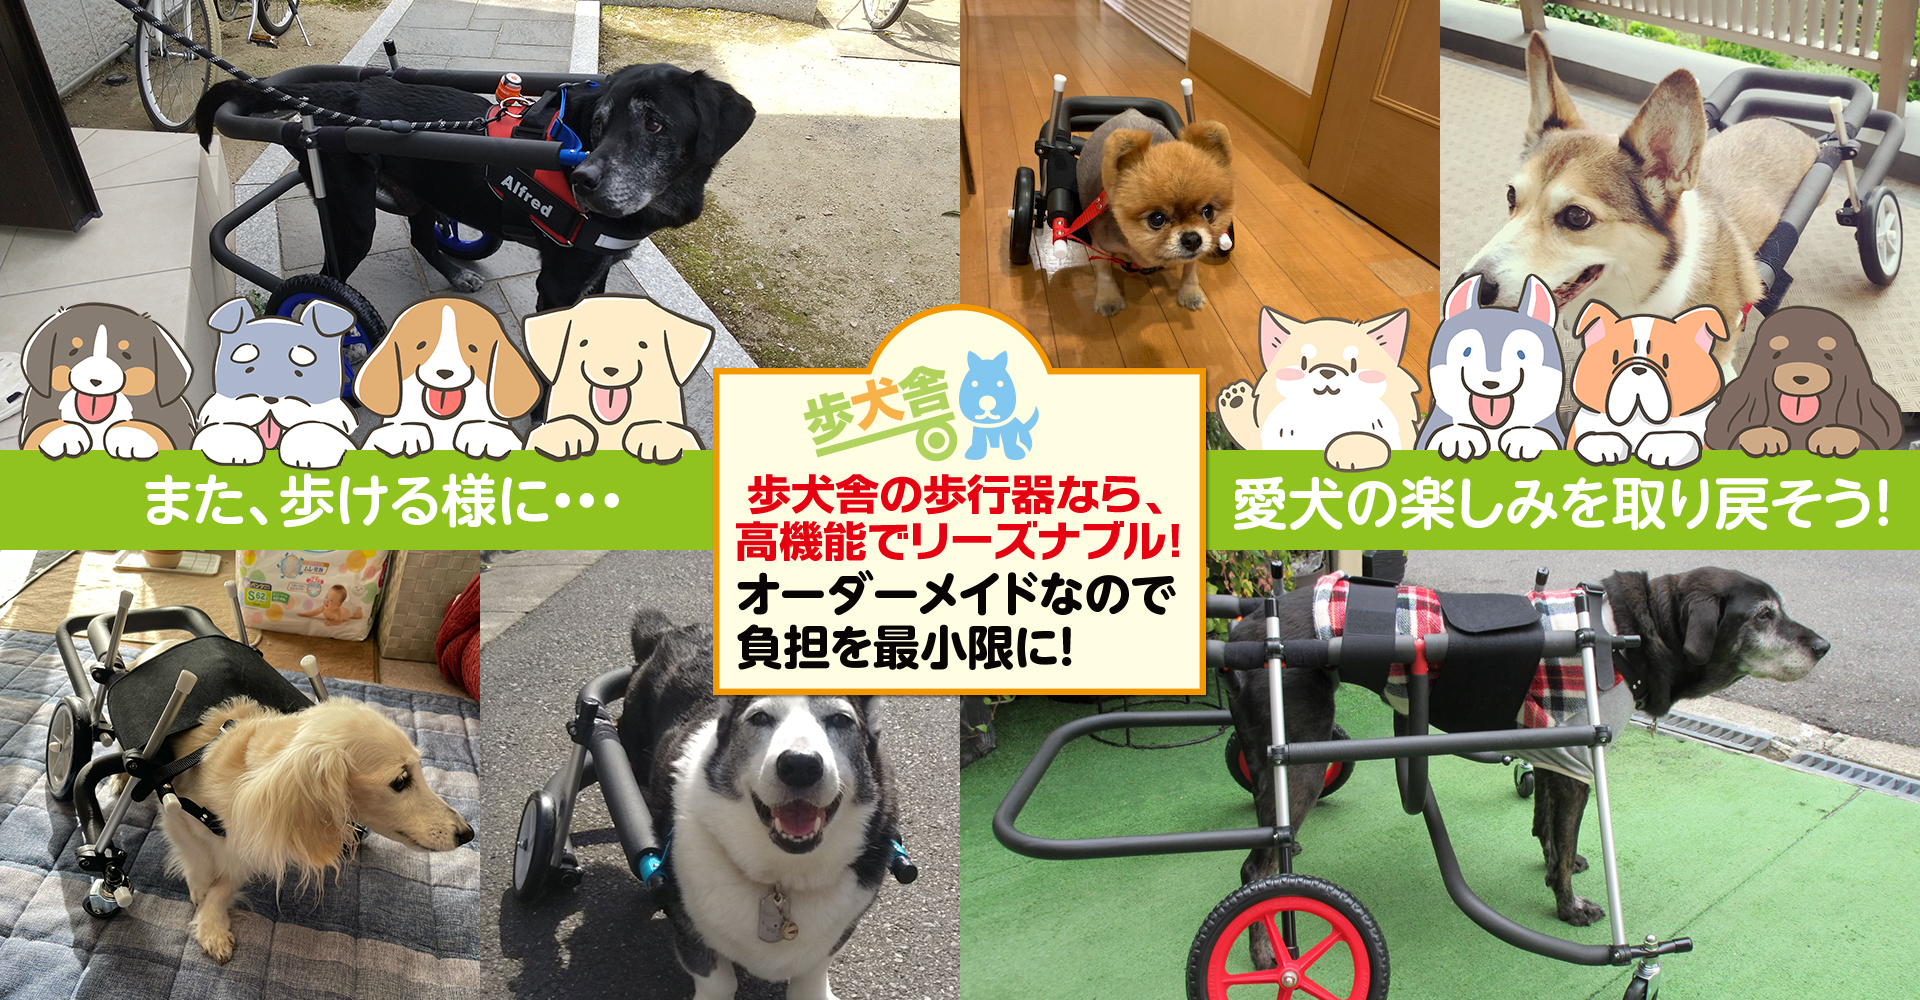 パピヨン4輪歩行器!リハビリ!食事補助!犬の歩行器!介護用!犬用車椅子で